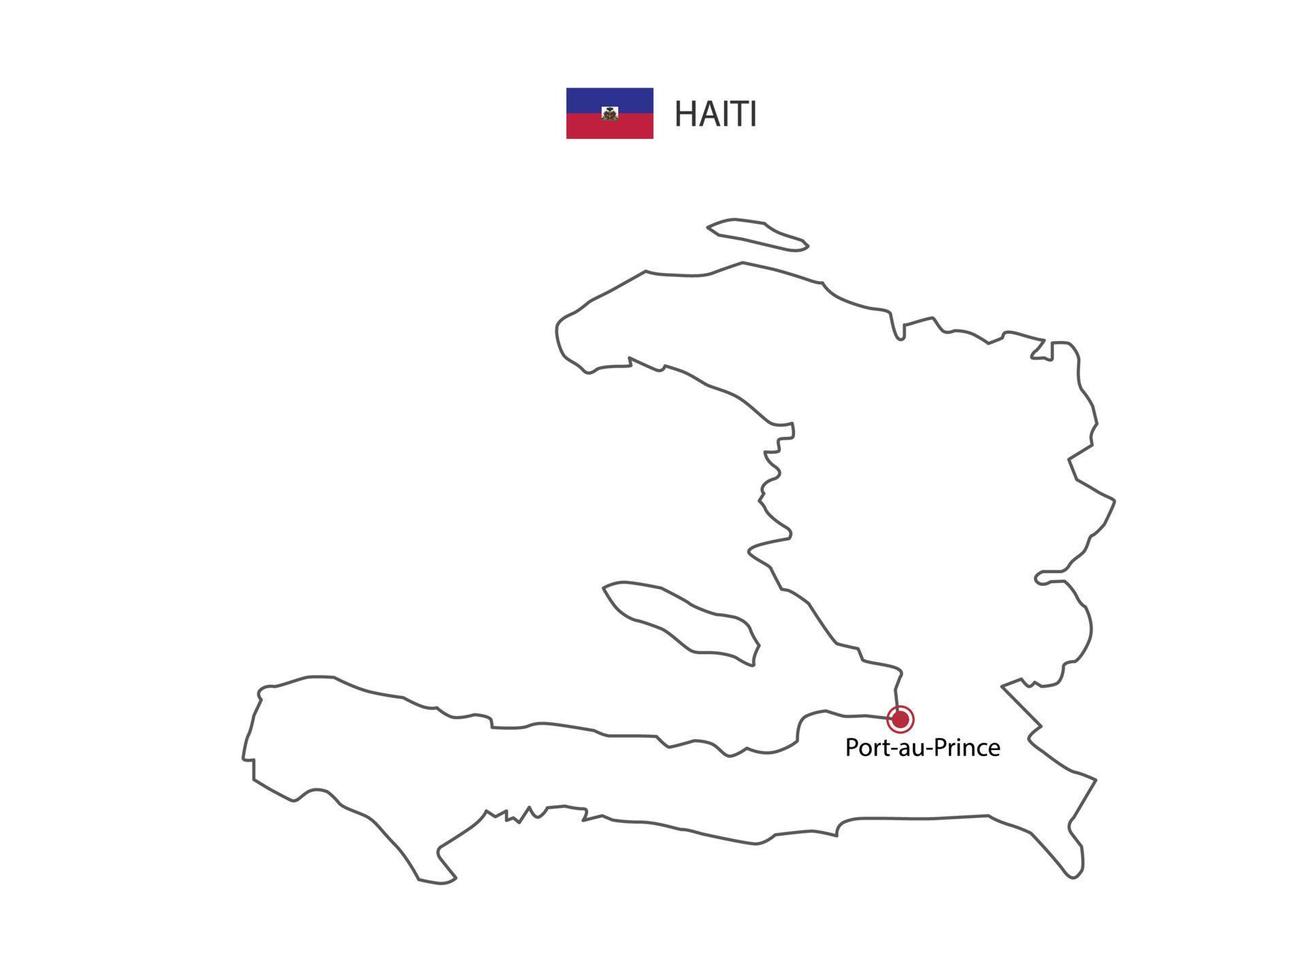 mão desenhar vetor de linha preta fina do mapa do haiti com capital port-au-prince em fundo branco.